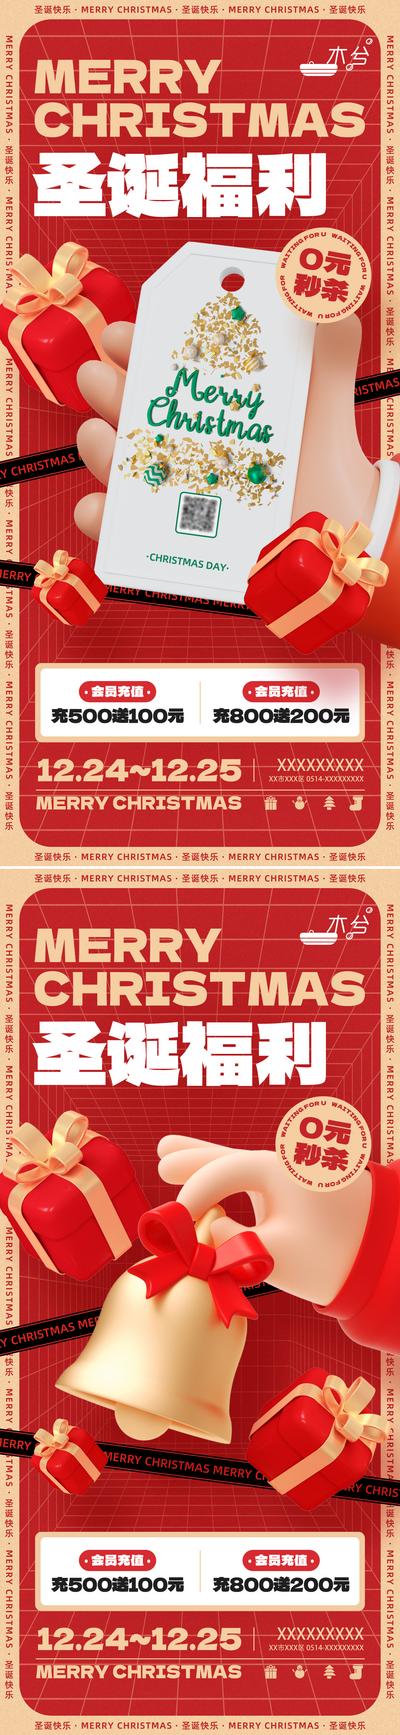 南门网 圣诞节直播促销系列海报